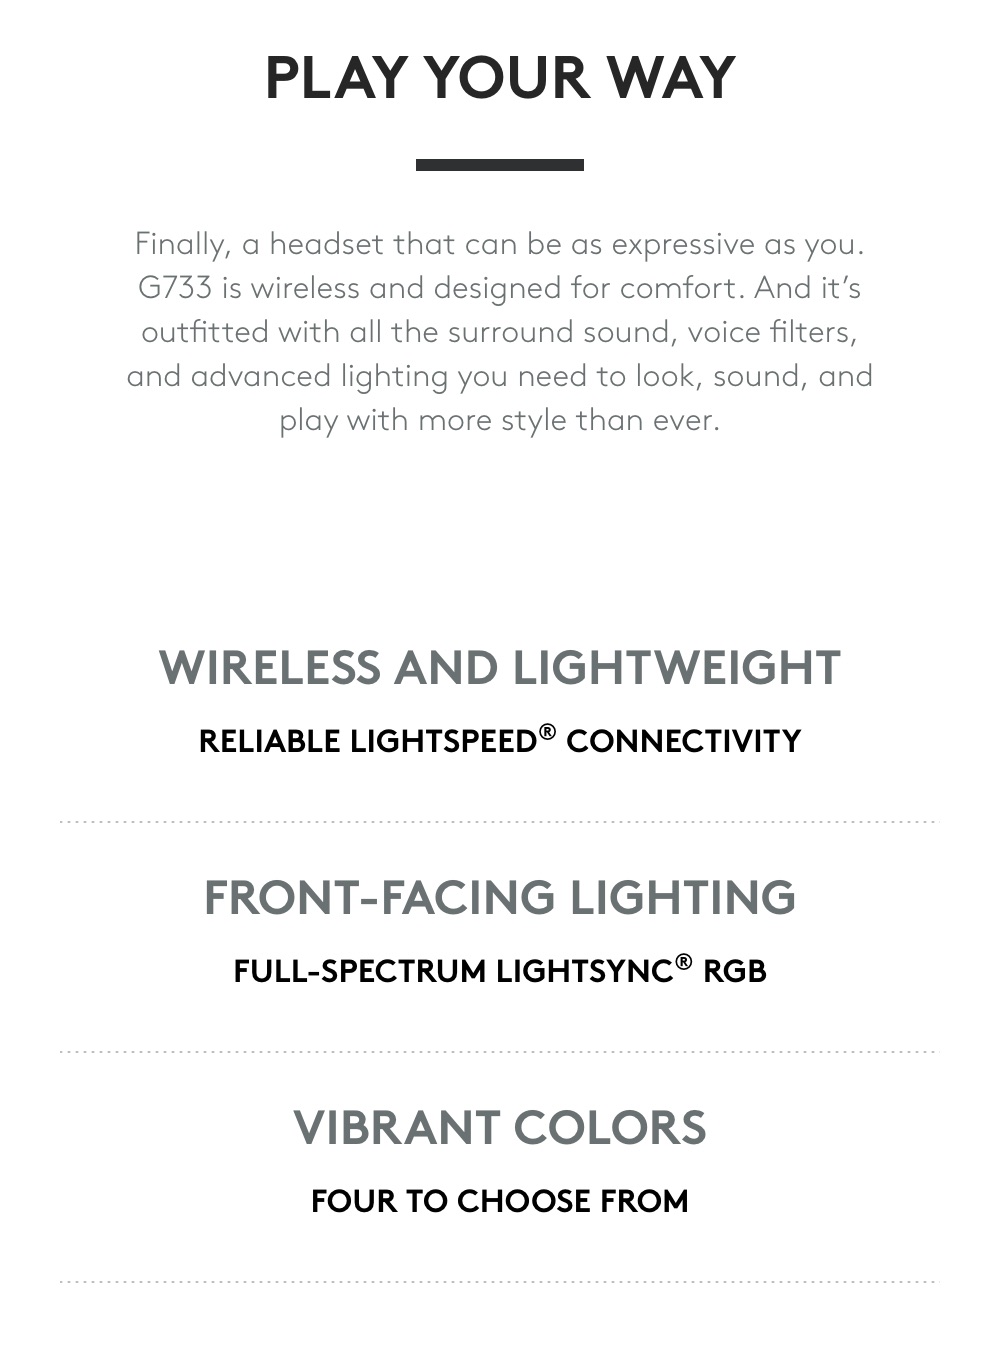 Logitech-G733-Lightspeed-Wireless-RGB-Gaming-Headset-Description-1